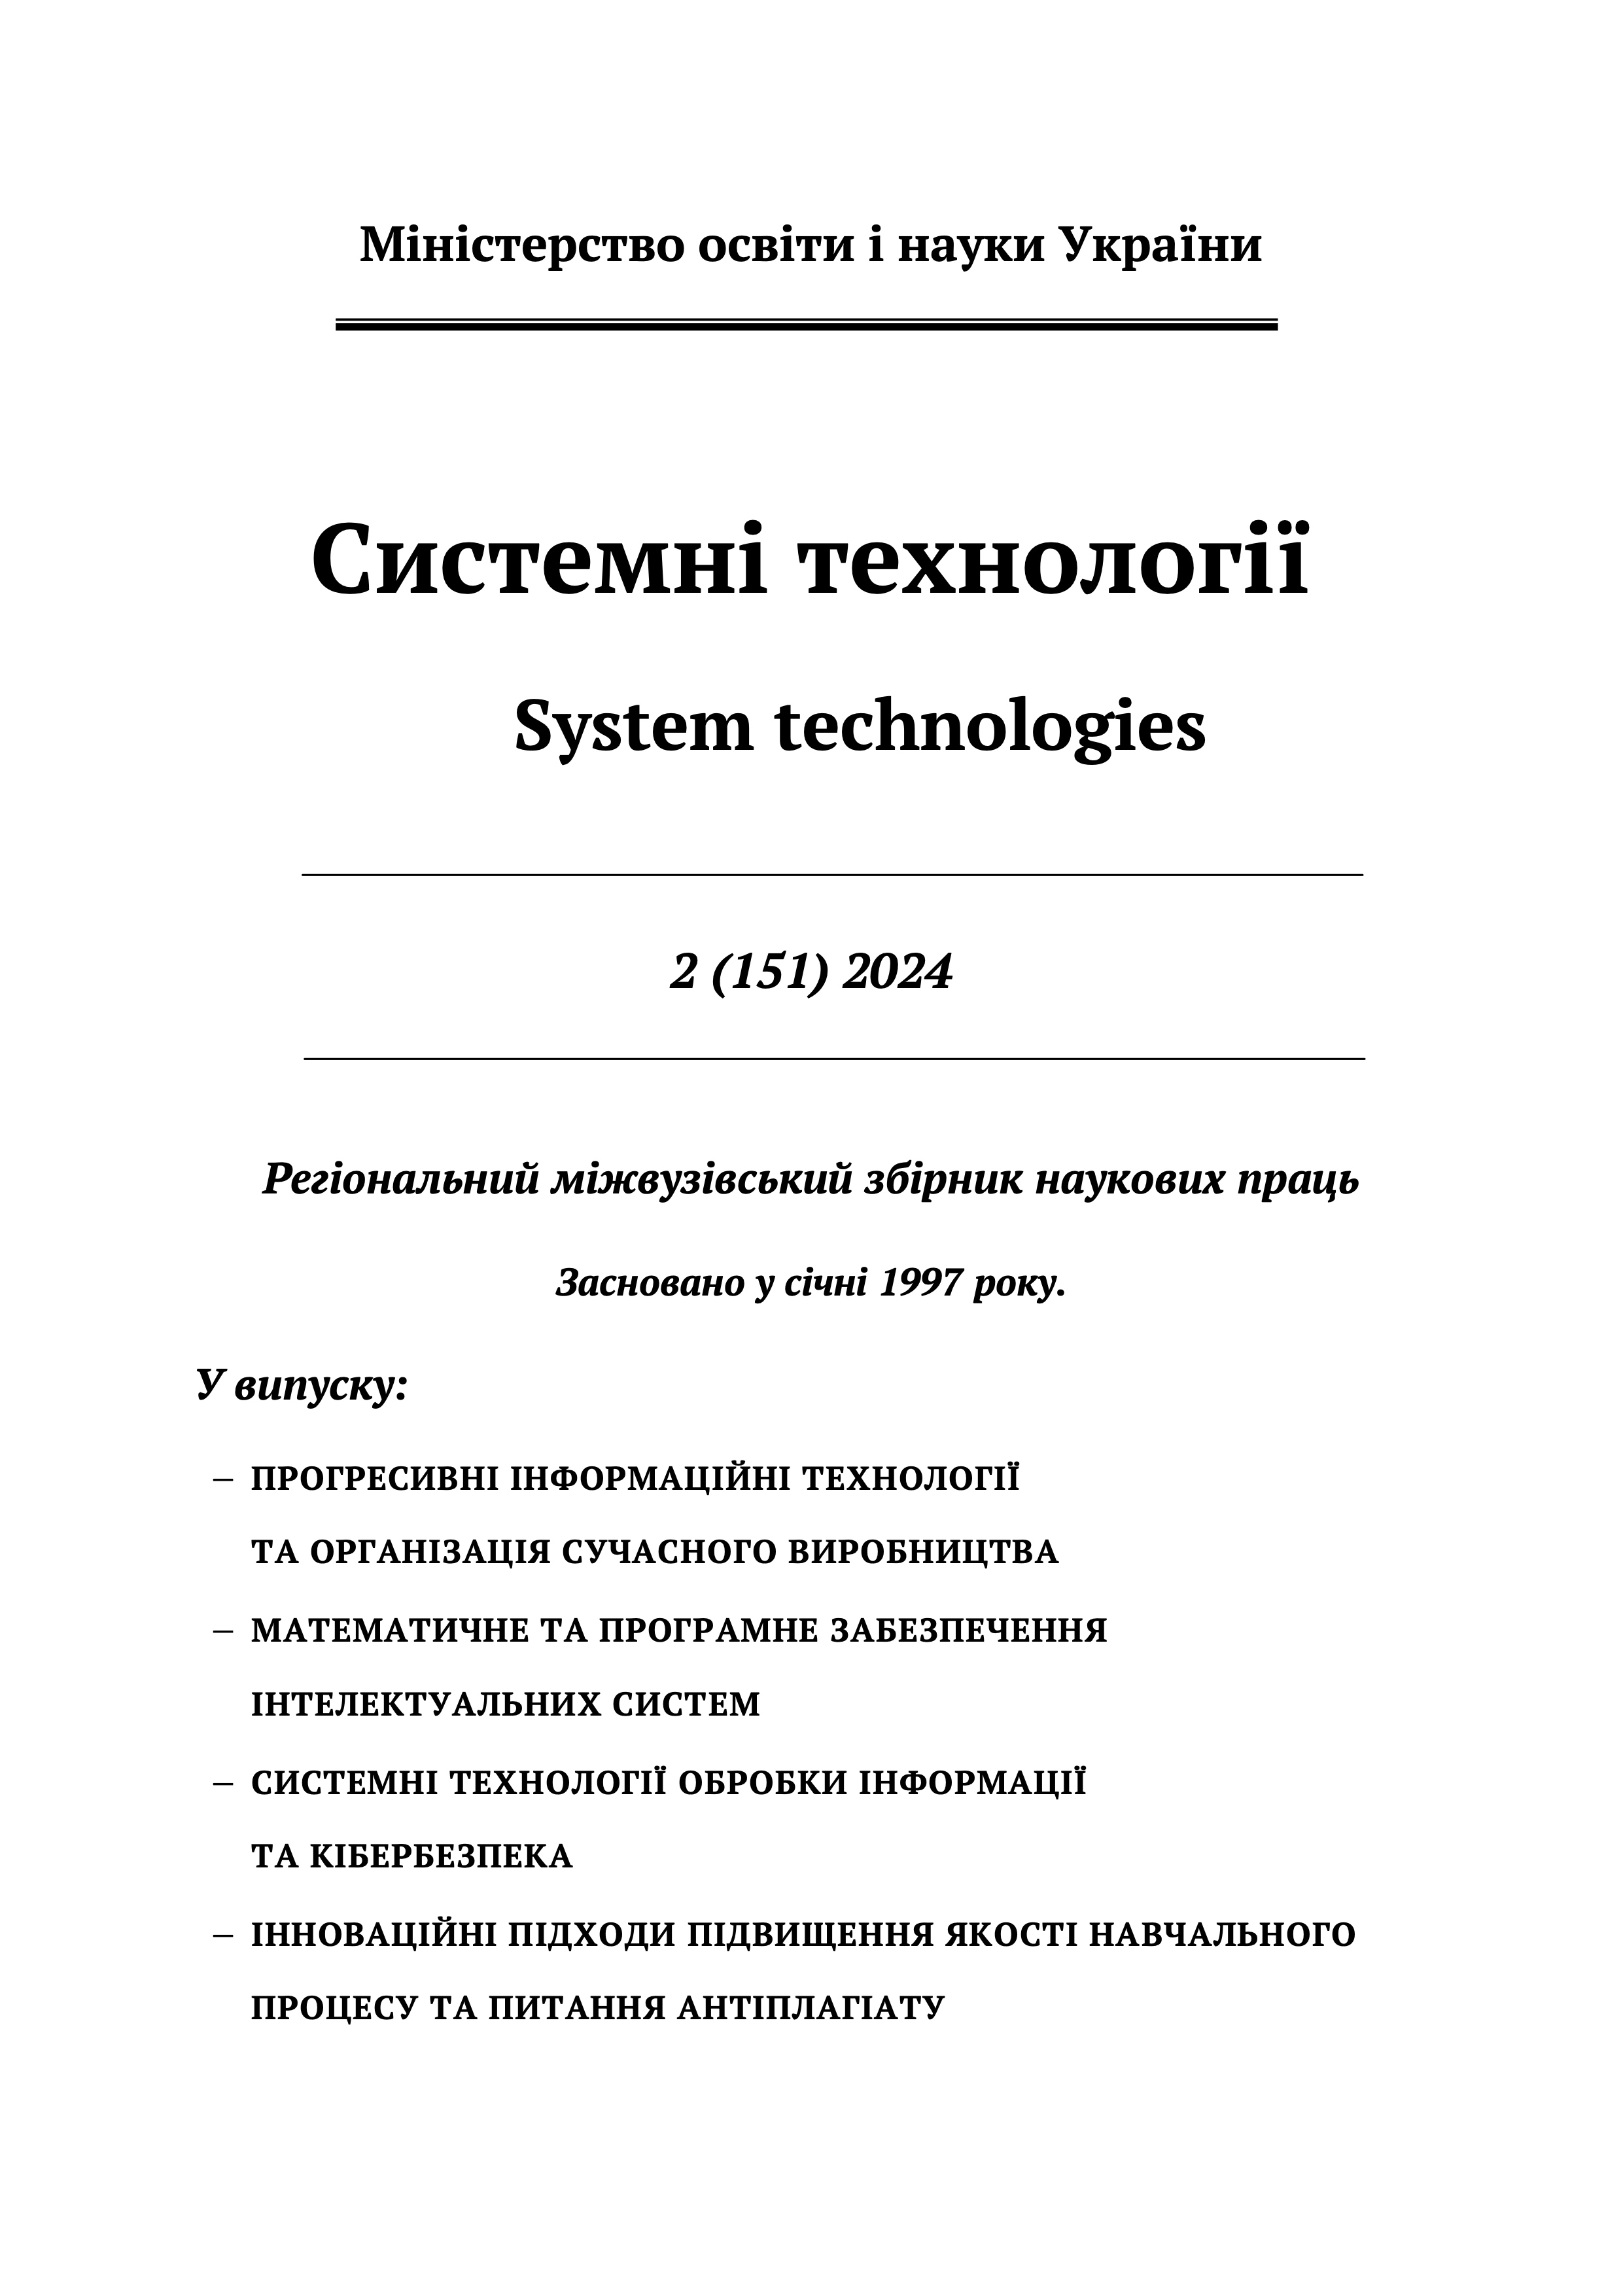 					Дивитися Том 2 № 151 (2024): Системні технології
				